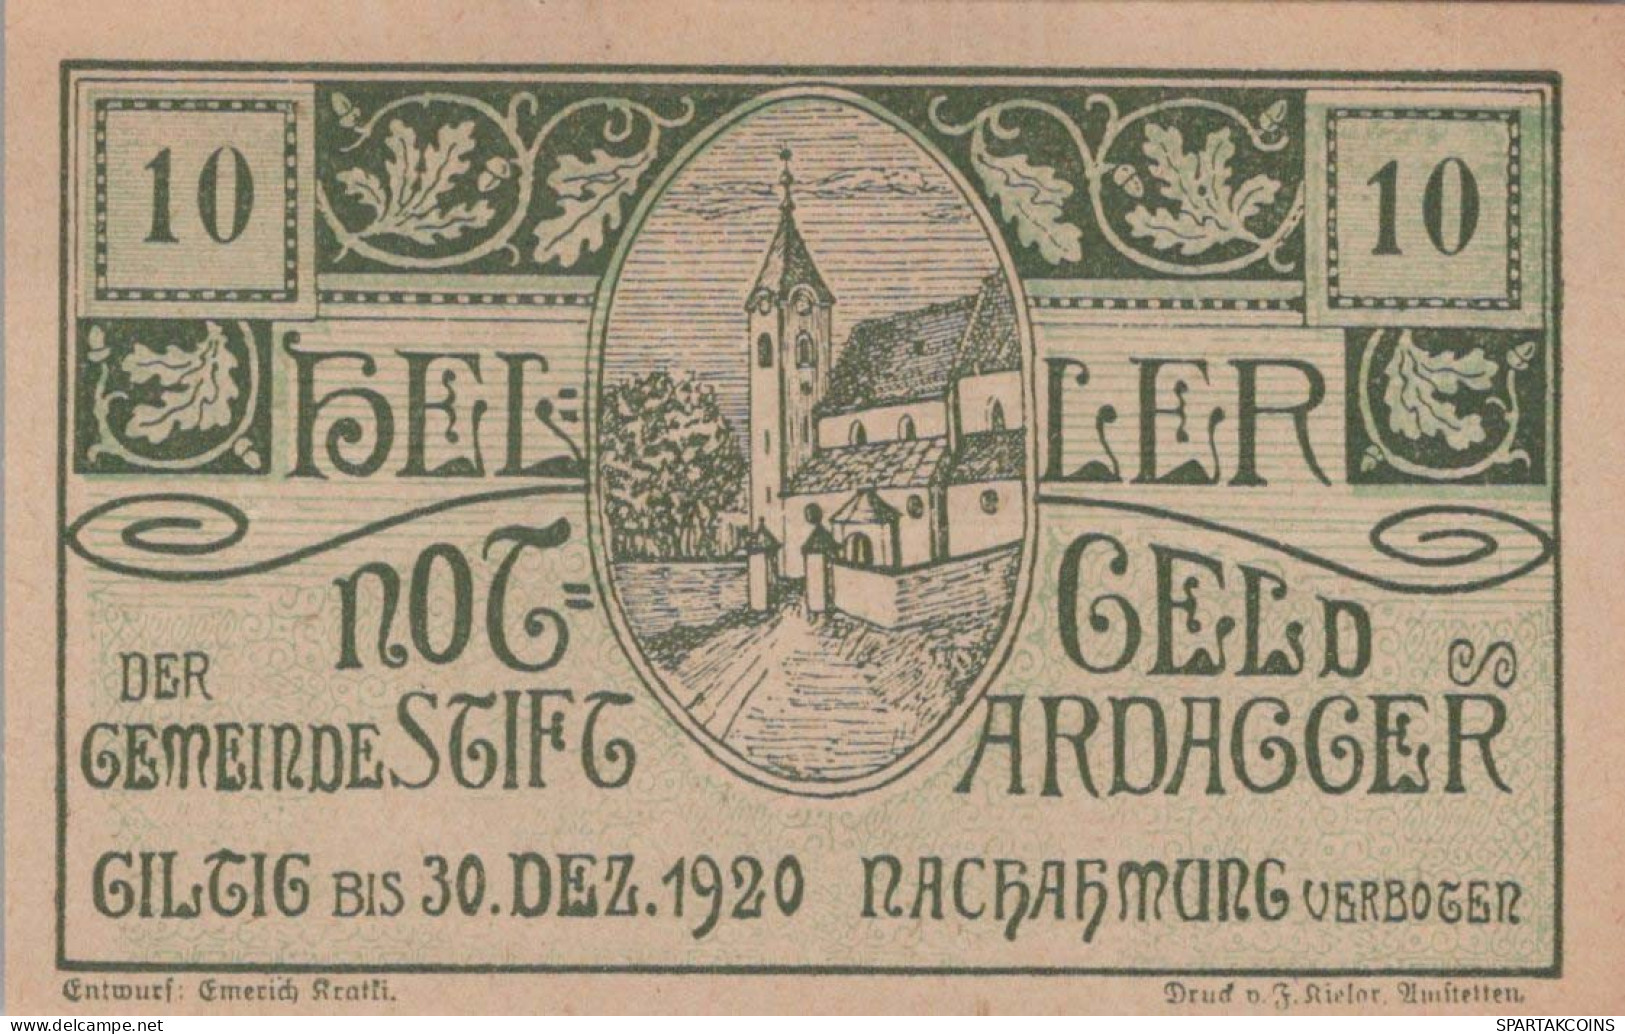 10 HELLER 1920 Stadt ARDAGGER Niedrigeren Österreich Notgeld Papiergeld Banknote #PG704 - [11] Local Banknote Issues